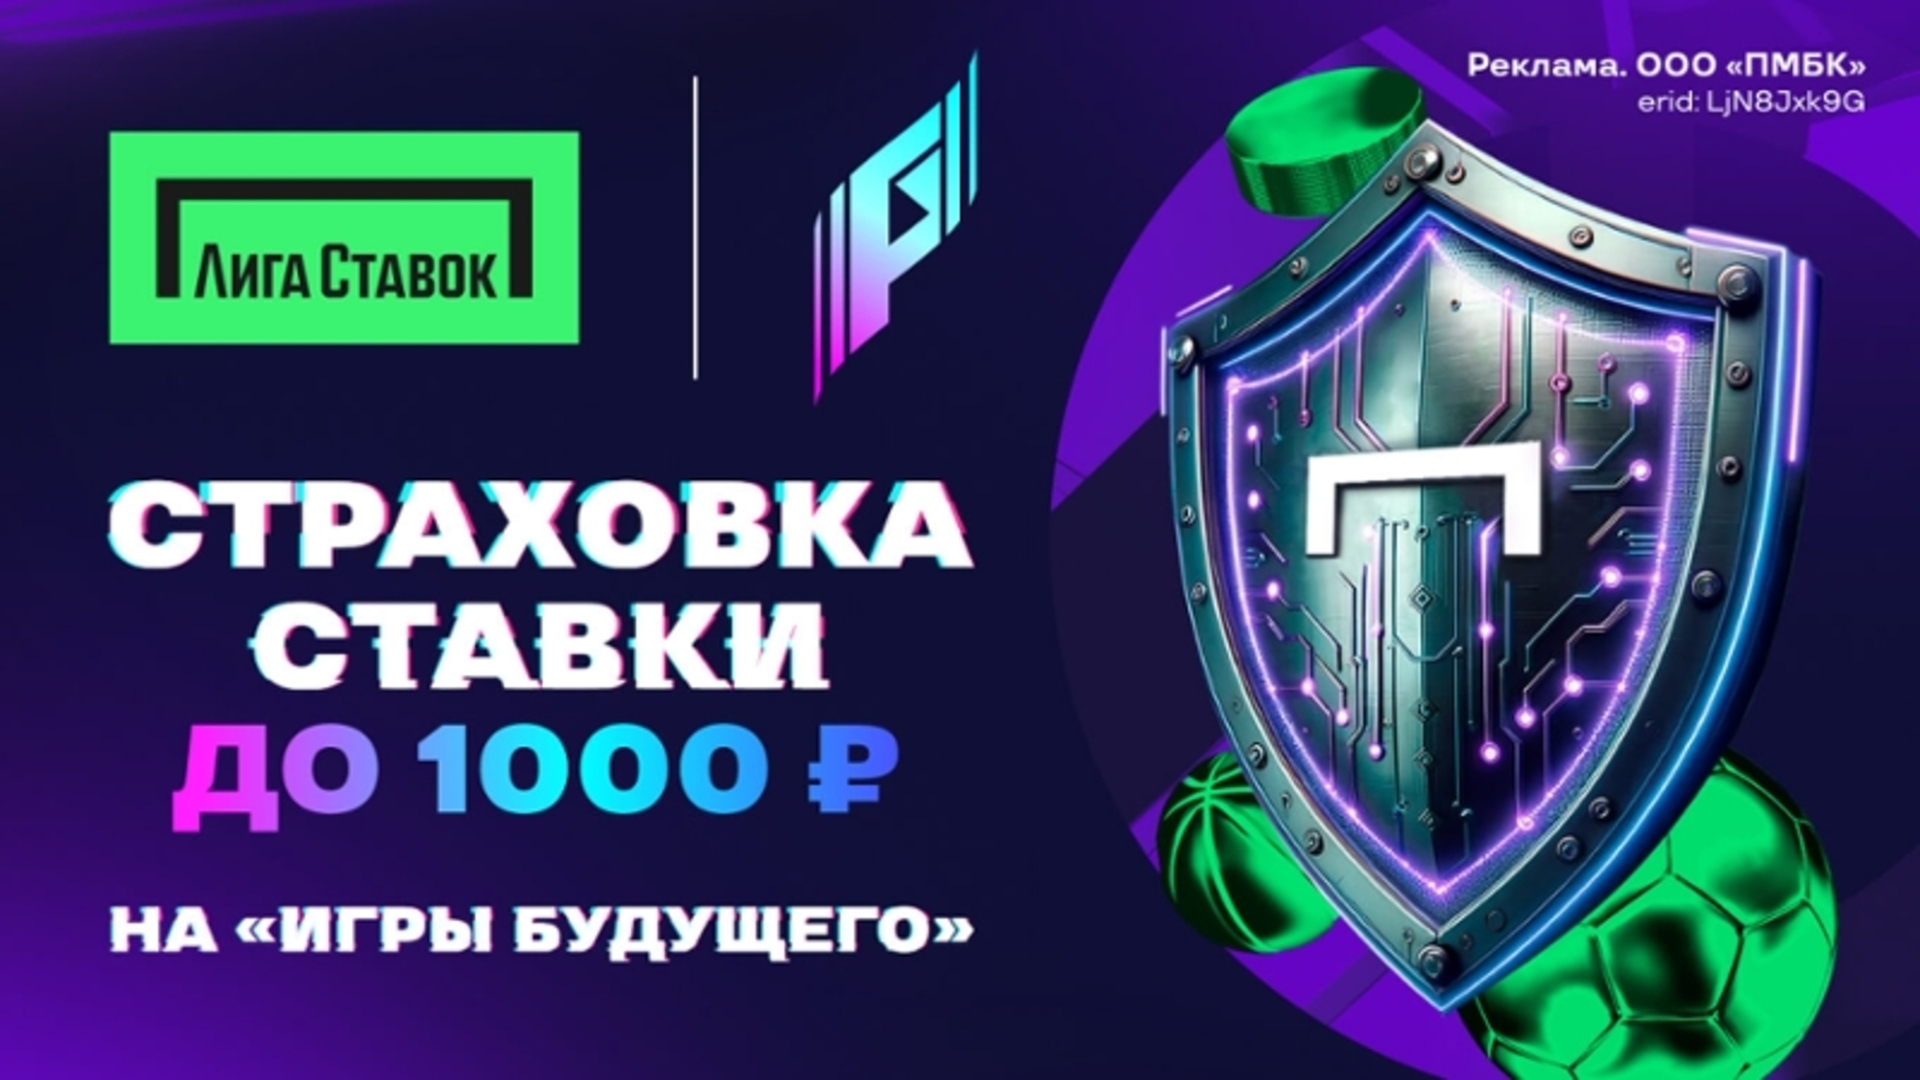 Промокод в Лиге Ставок: страховка ставки до 1000 рублей